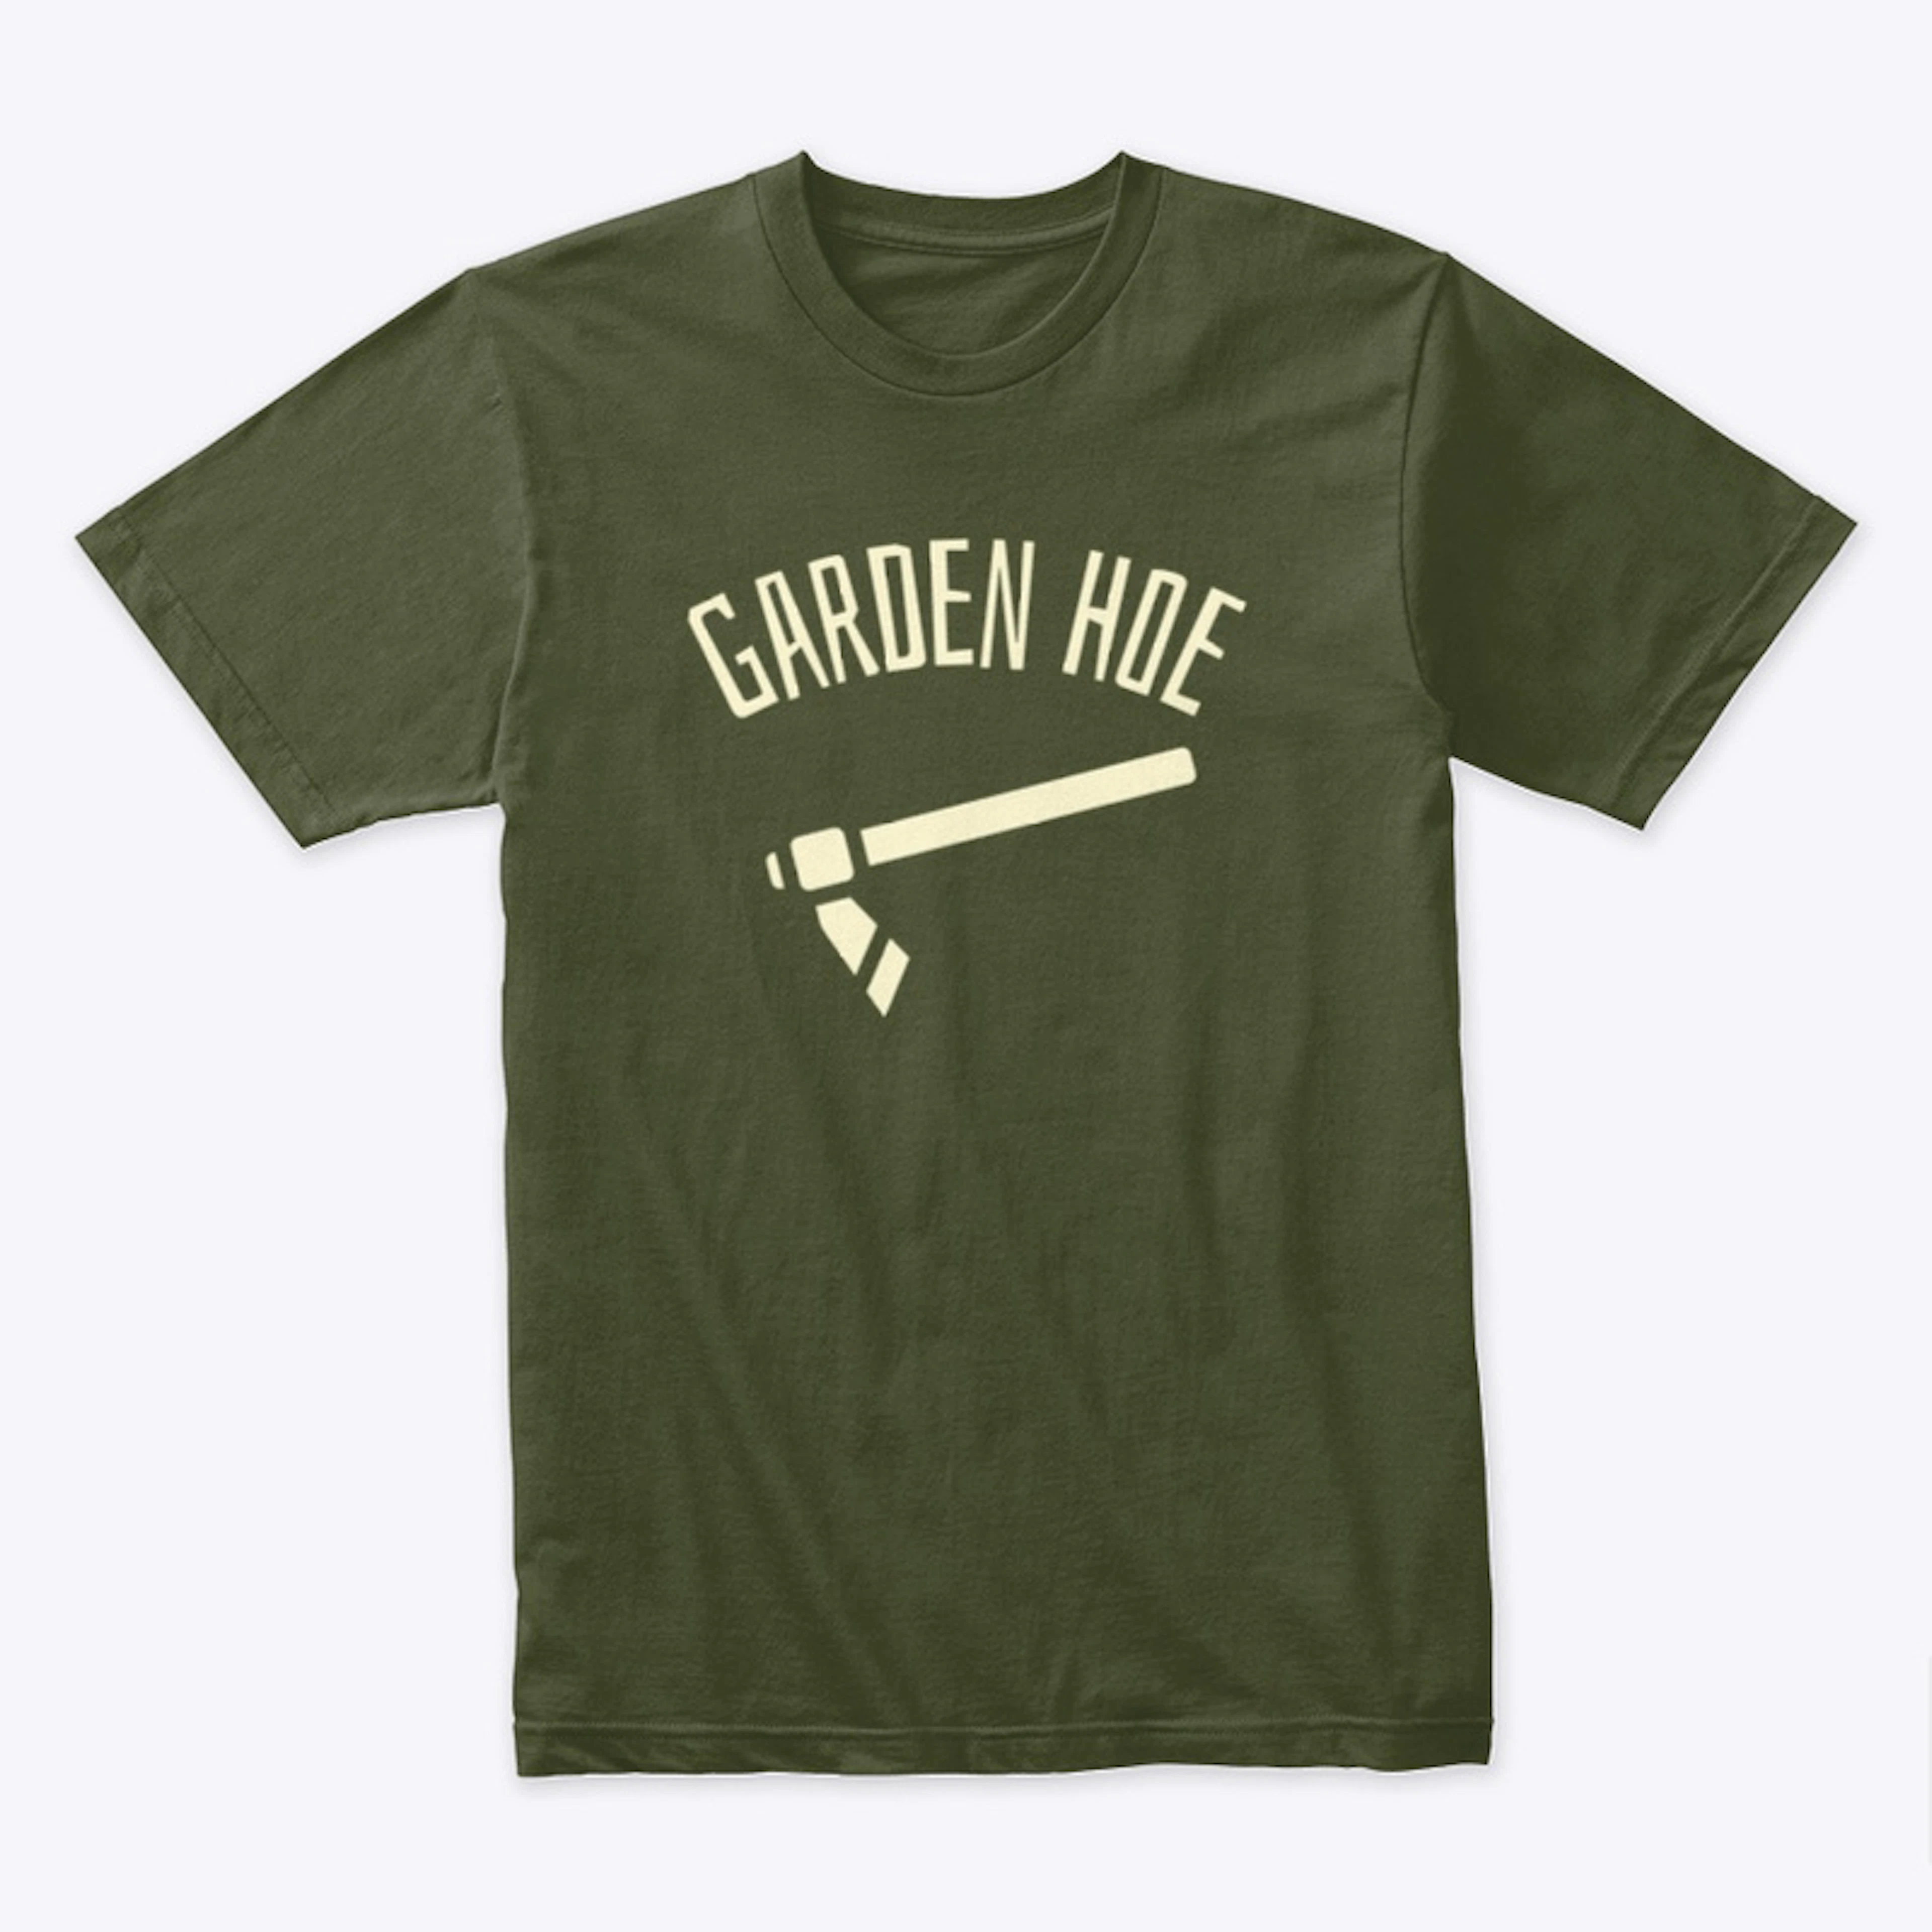 Garden hoe